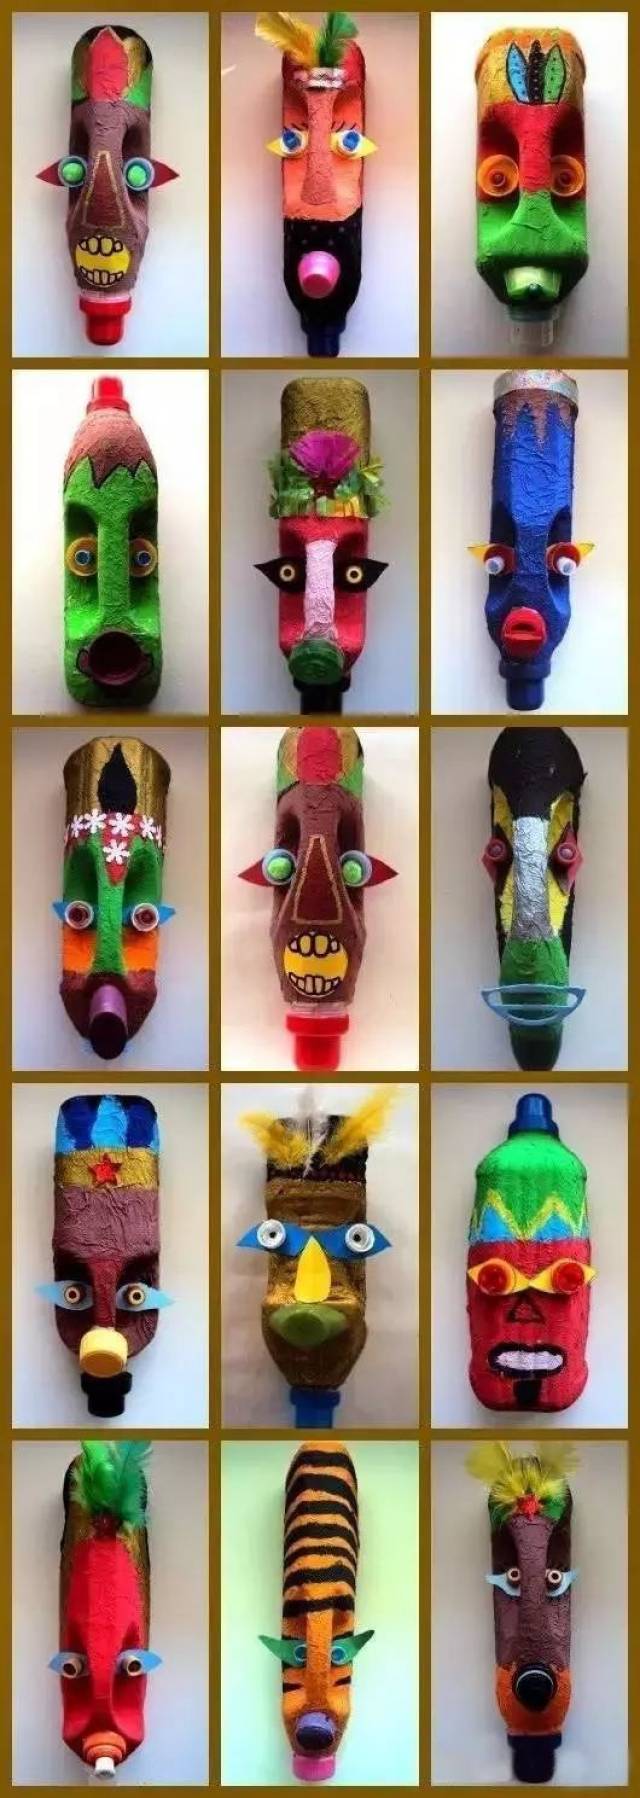 【巧妈手工】塑料瓶的创意改造合集,保证你未见过的创意